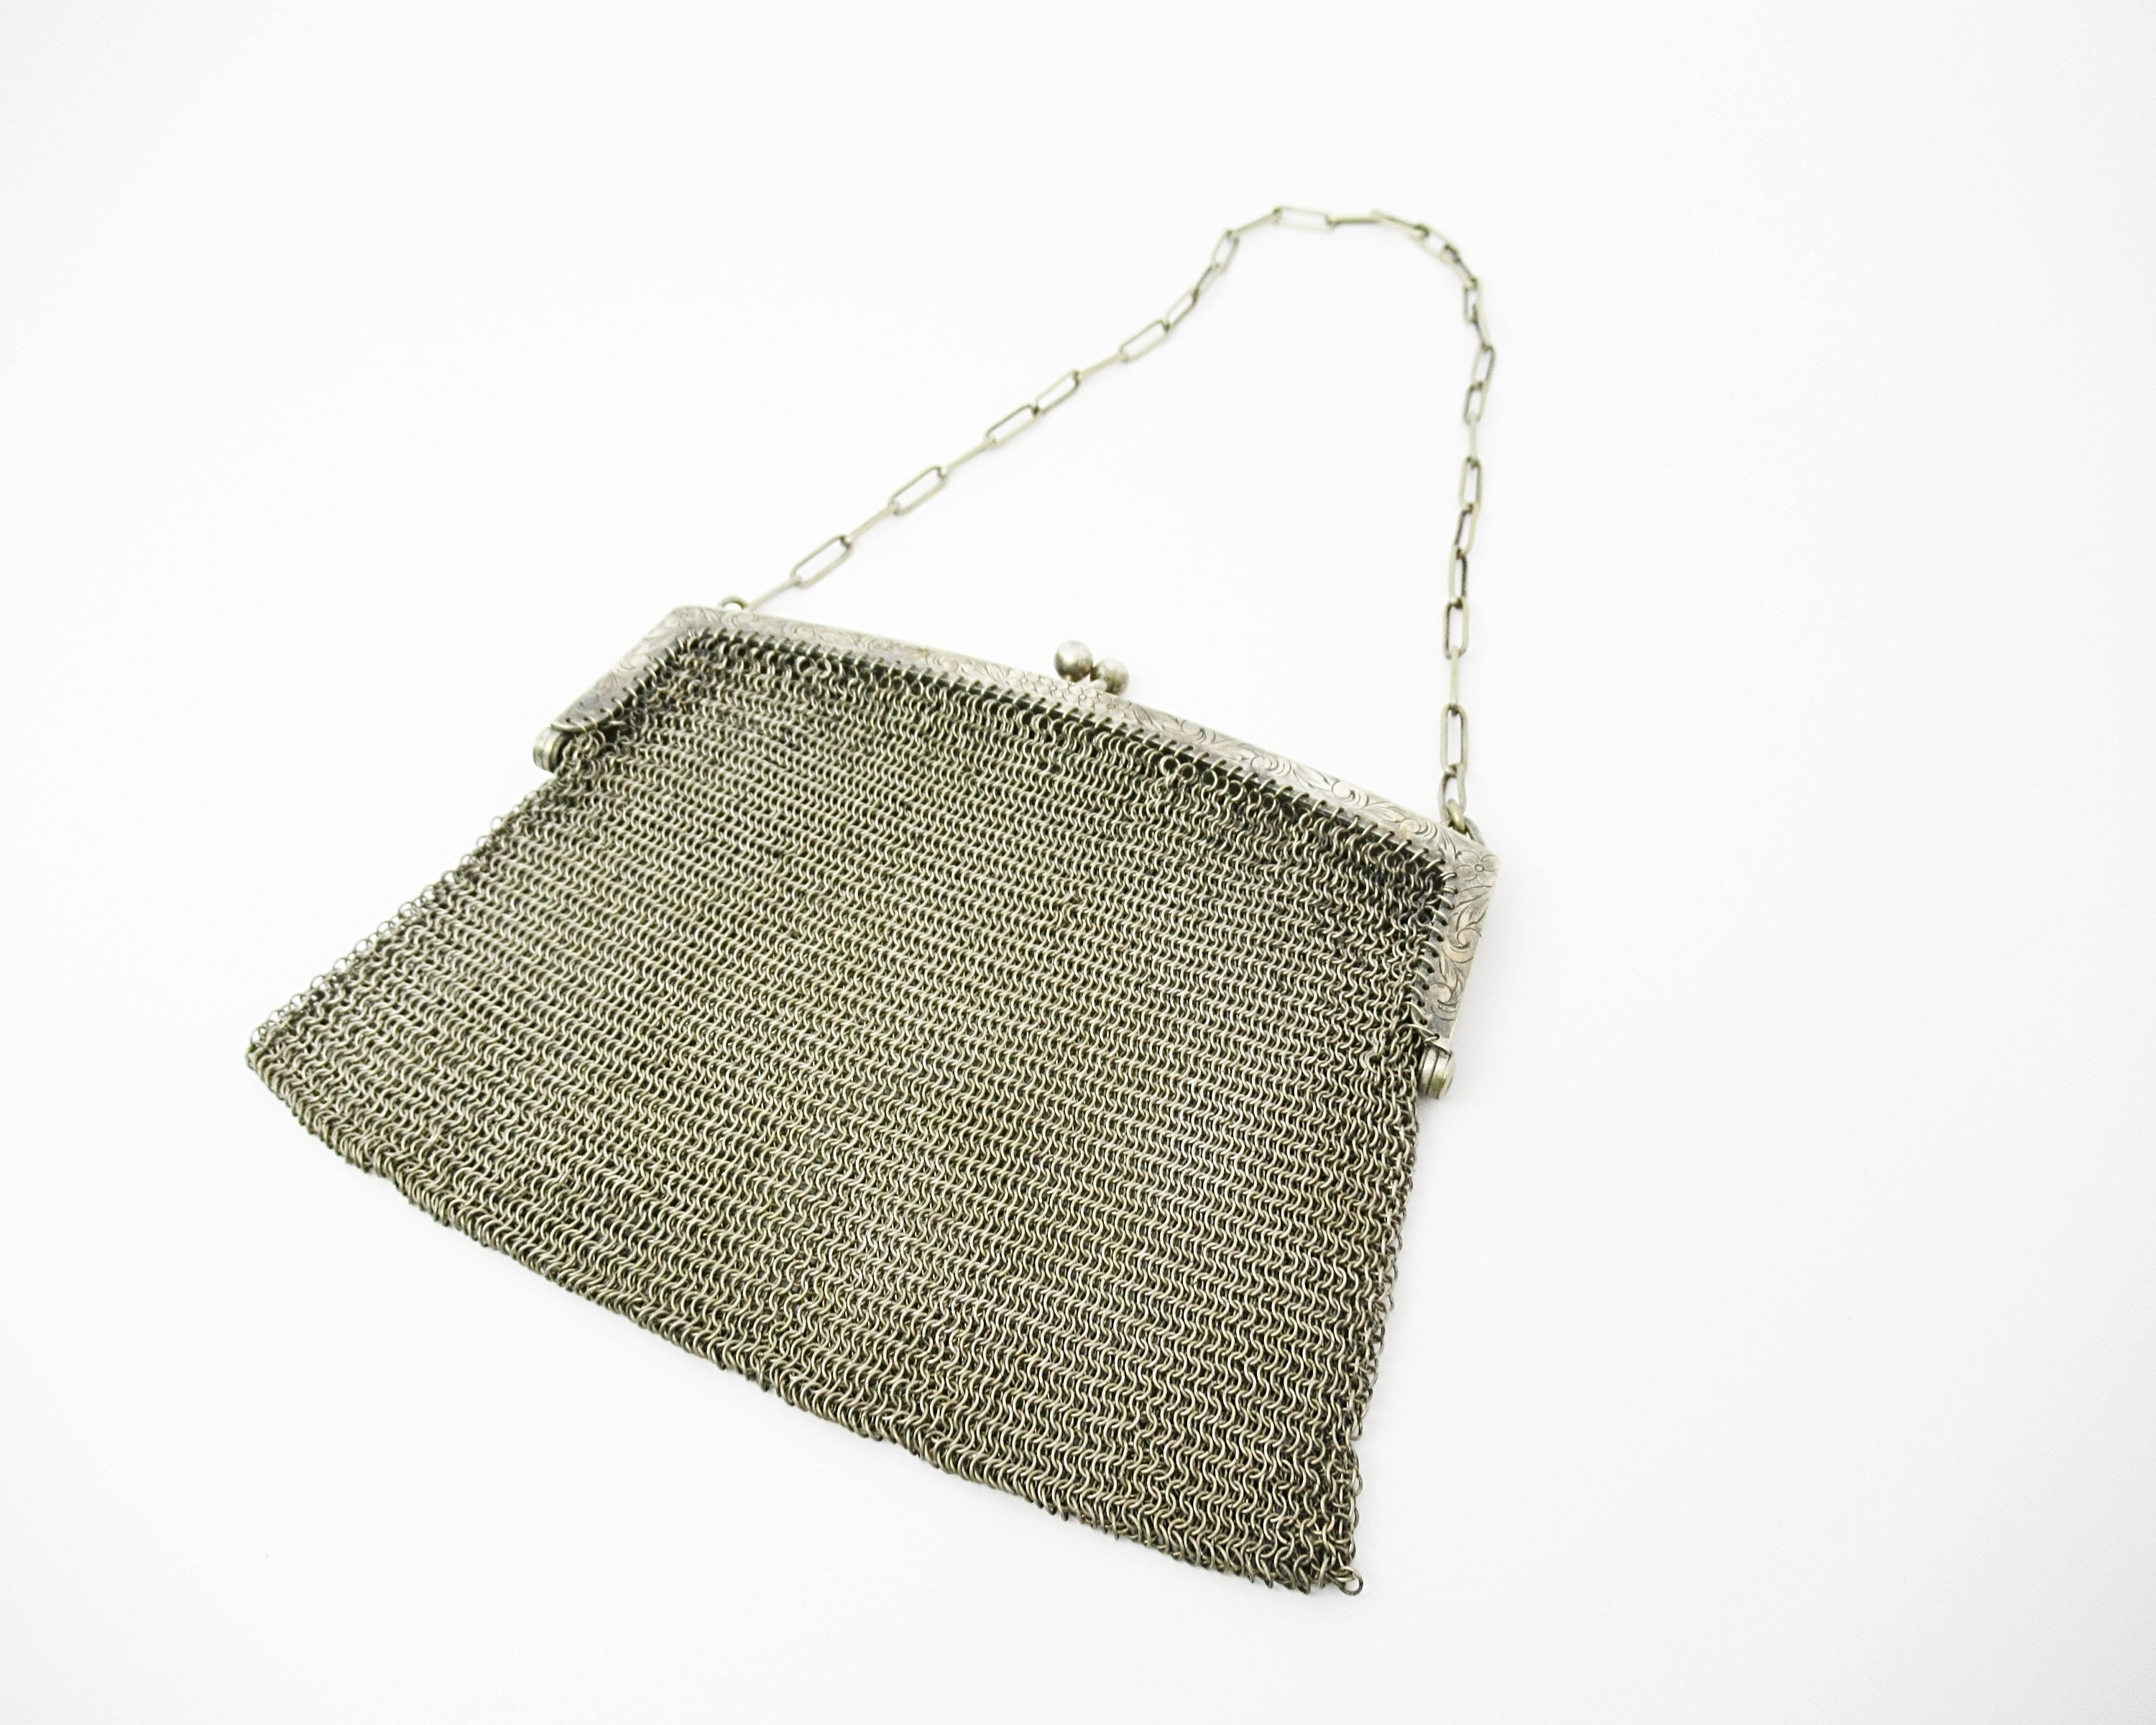 Antique German Silver Mesh Purse Handbag Art Deco Purses | Etsy